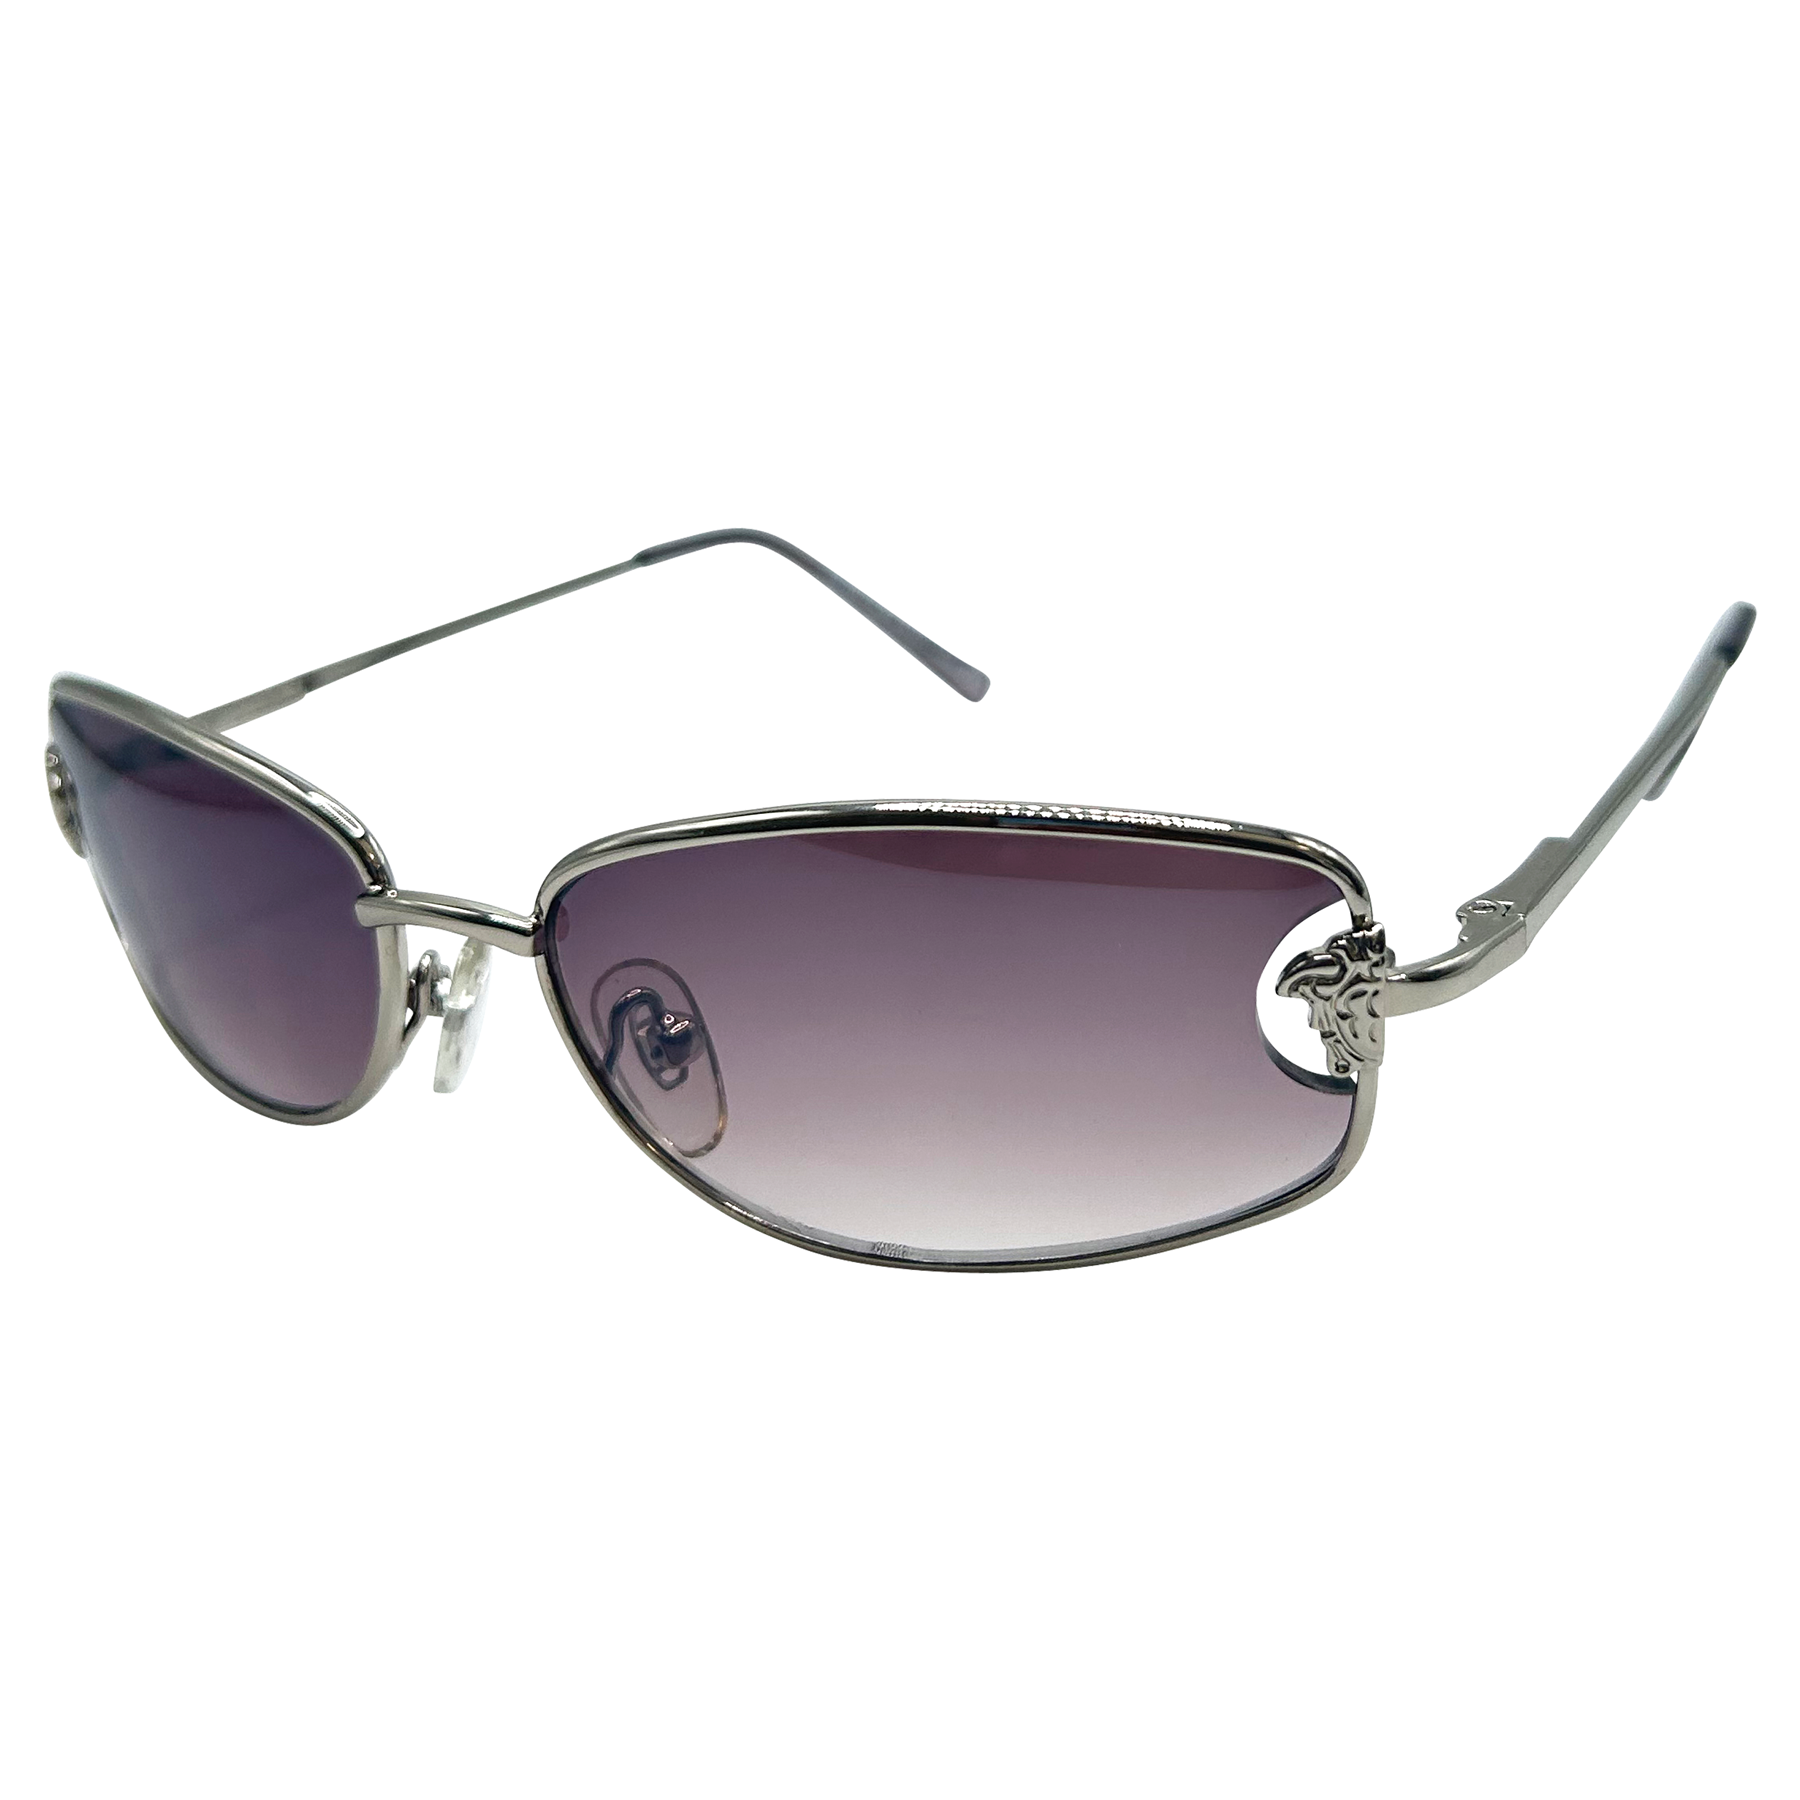 SUGARPLUM Square 90s Sunglasses